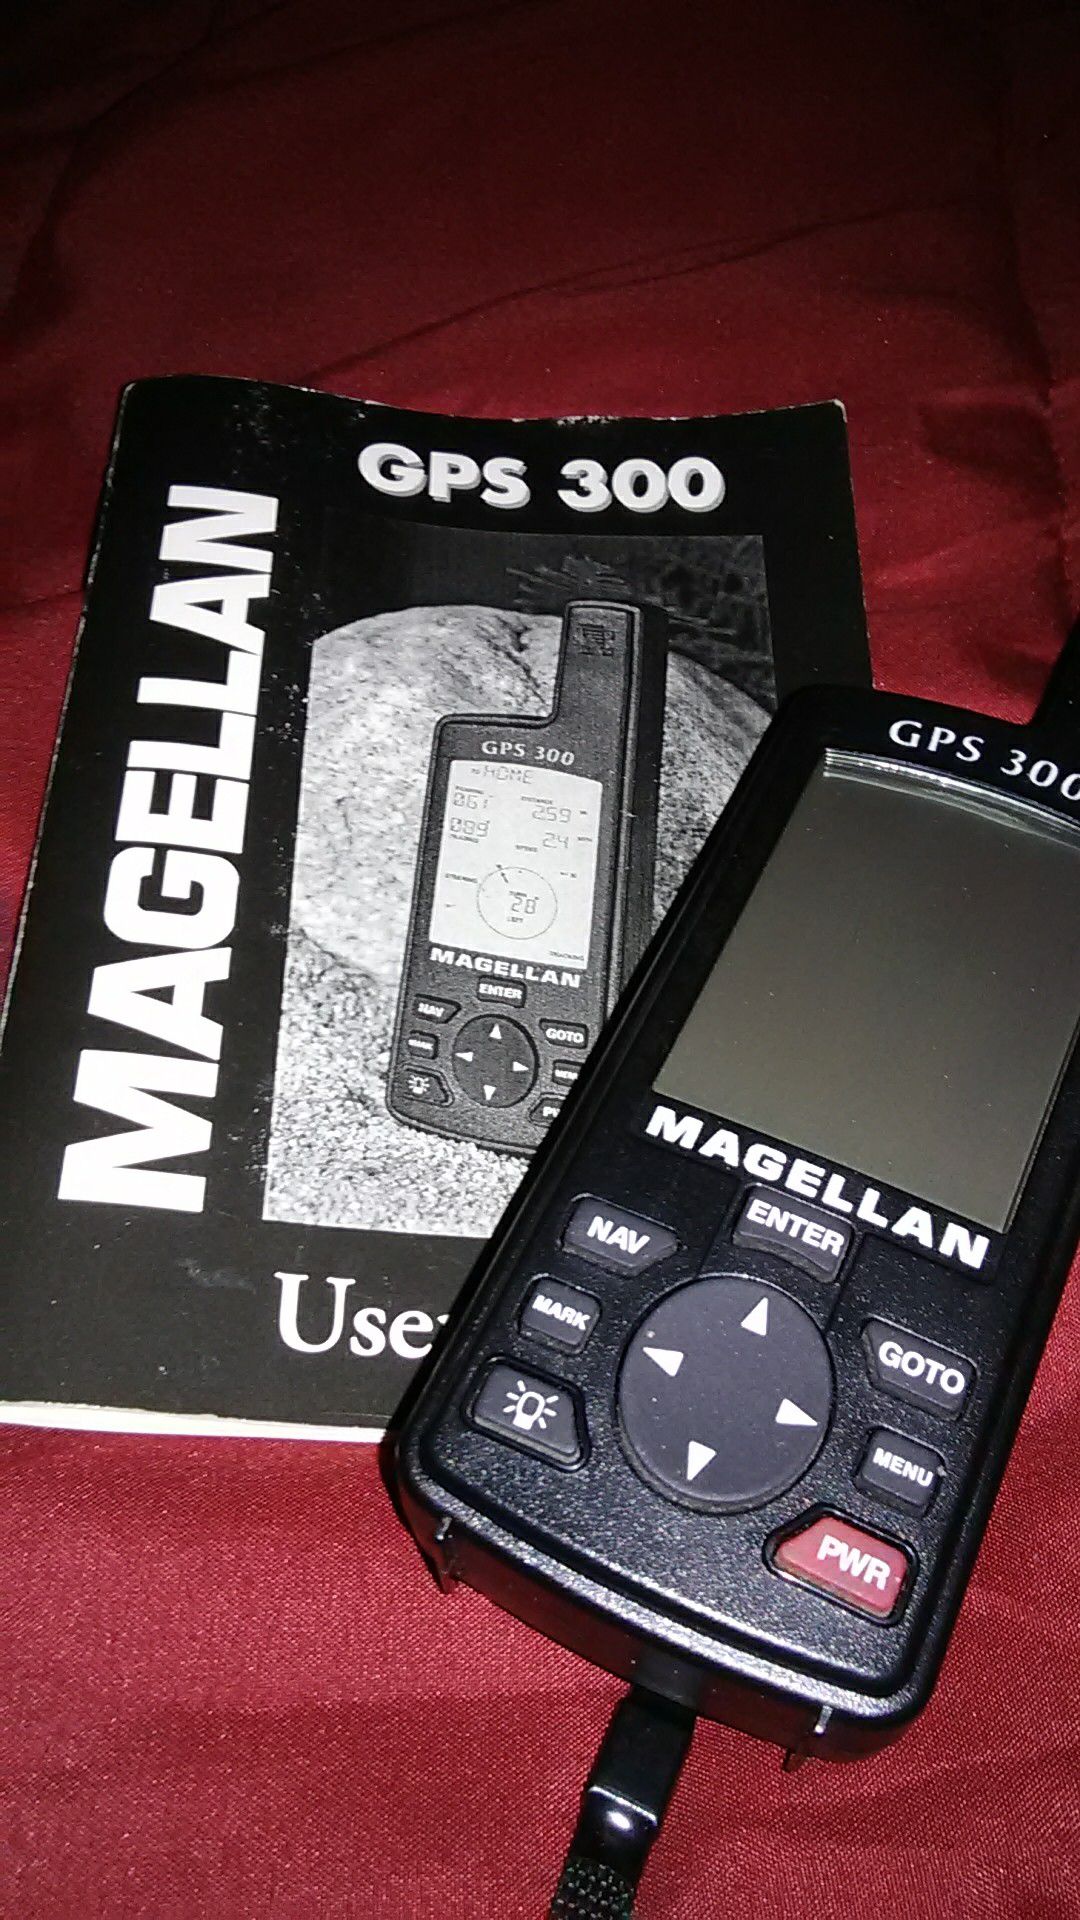 Magellan GPS 300 2.2-Inch Portable GPS Navigator by Magellan Works great nothing wrong